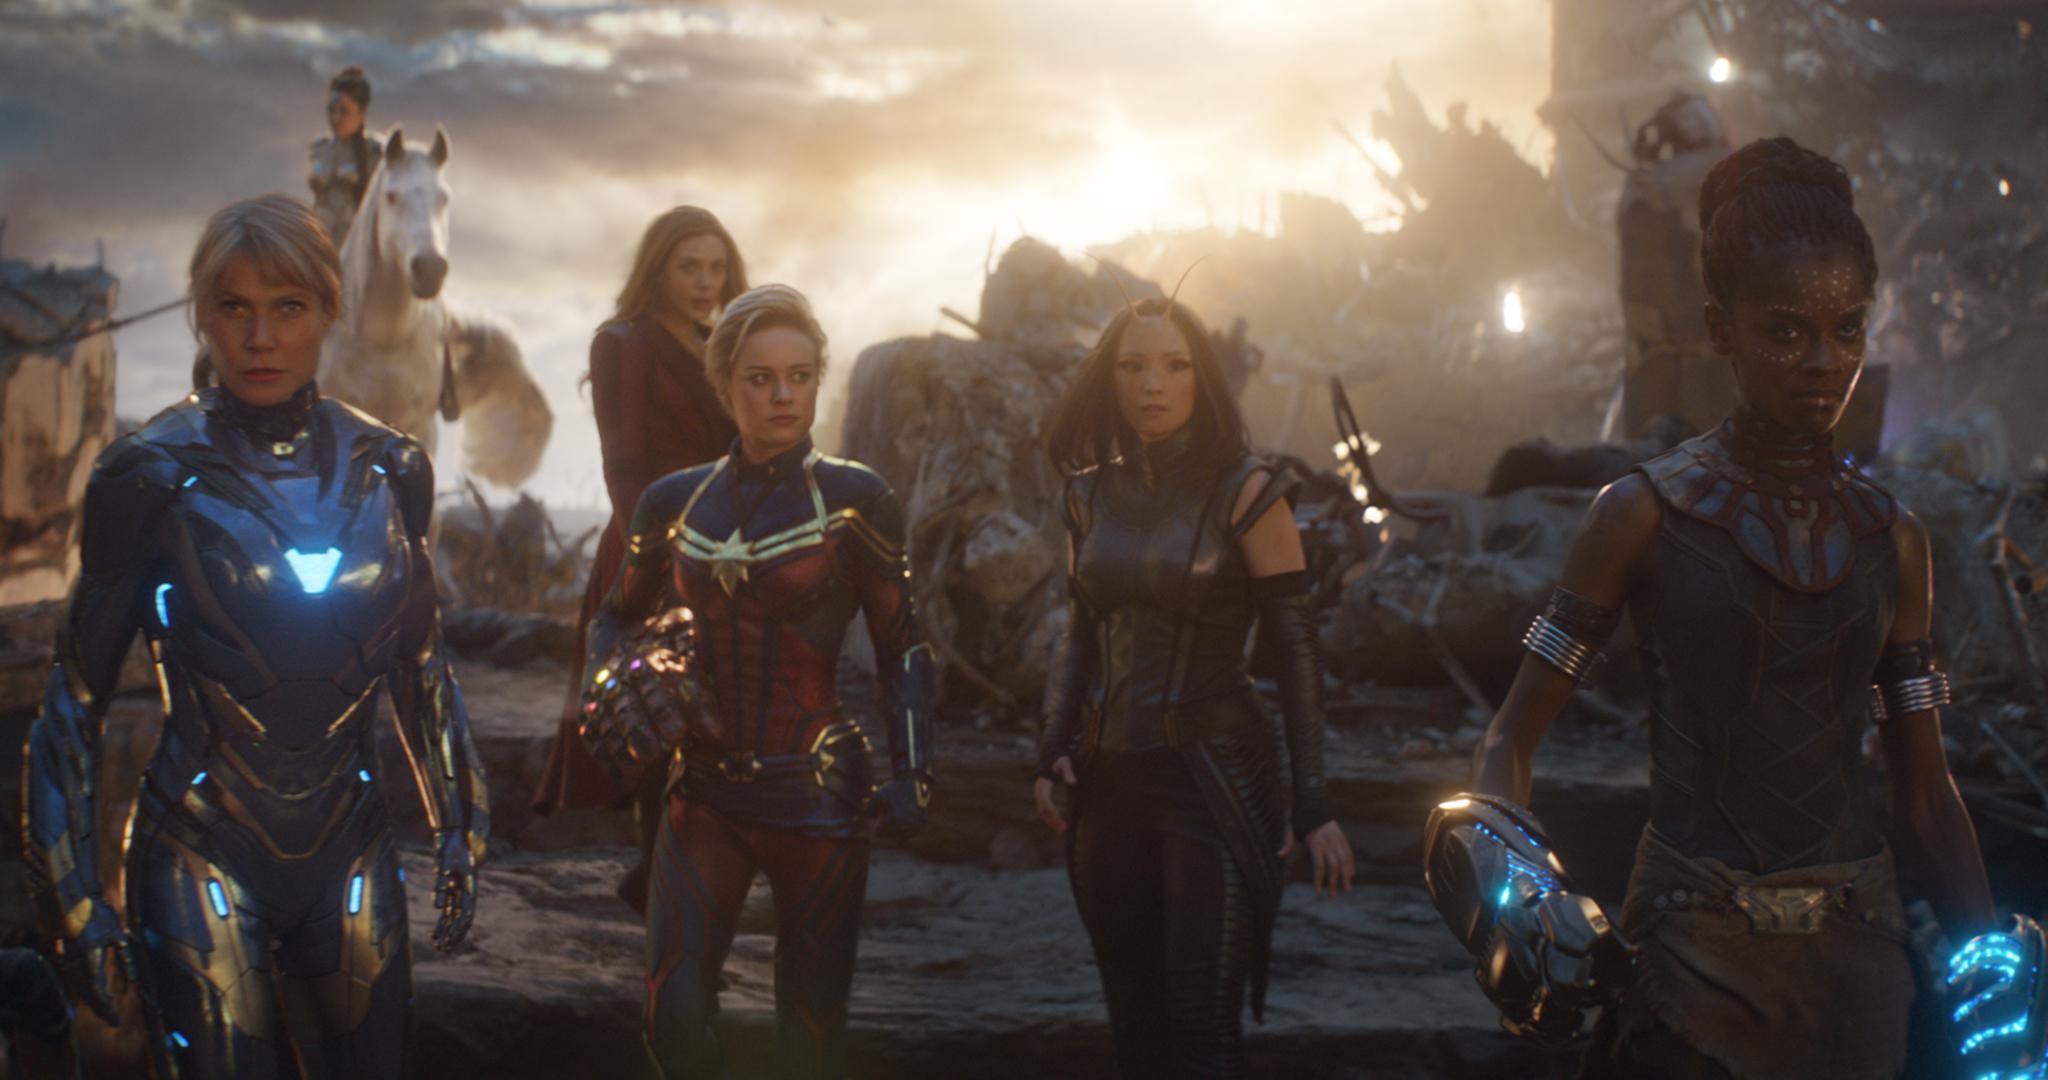 Marvel Releases High Res Avengers: Endgame Spoiler Image